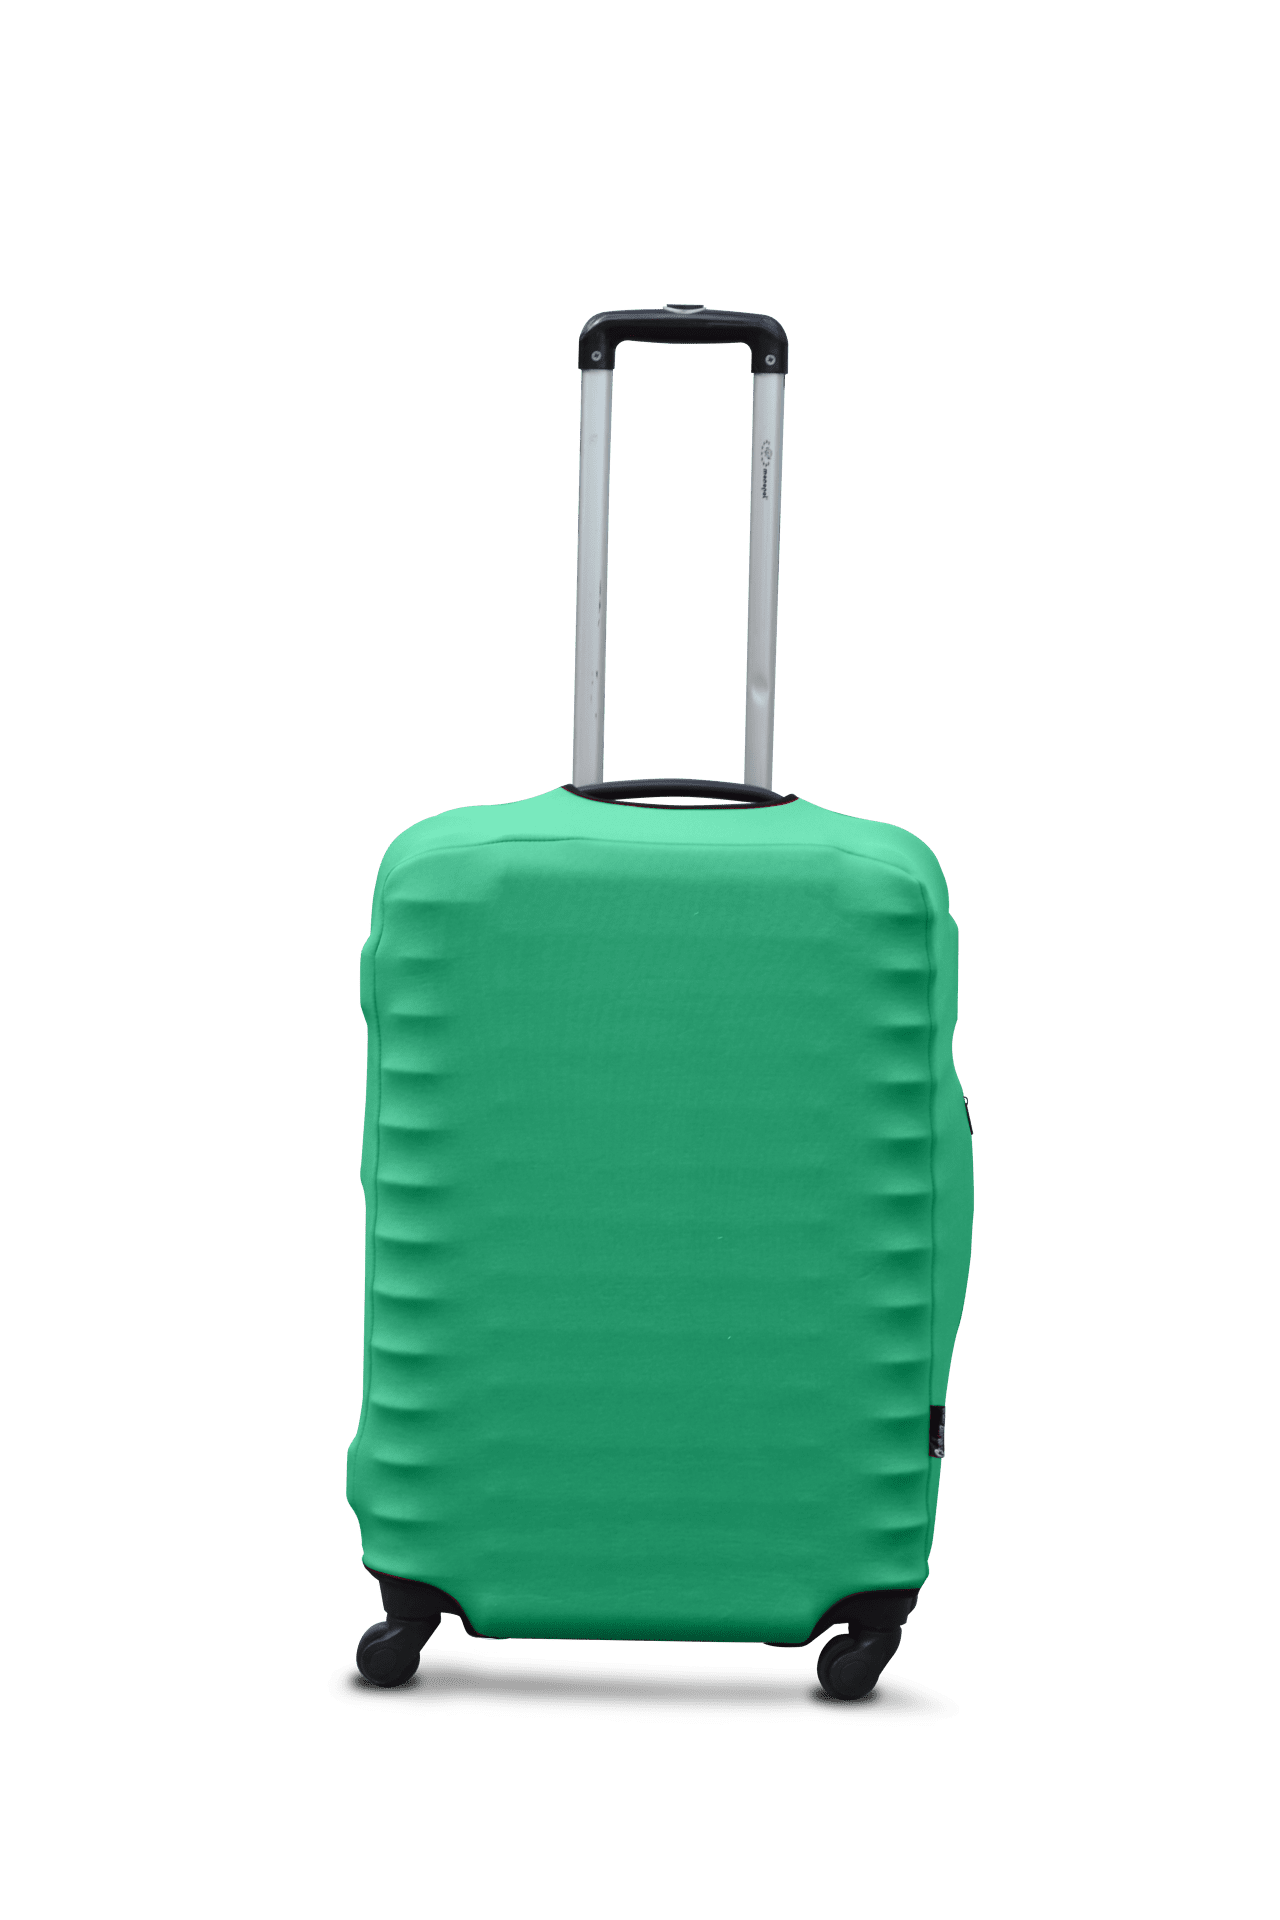 Husa pentru valiza daiving Cover dawing L.GREEN L - 1